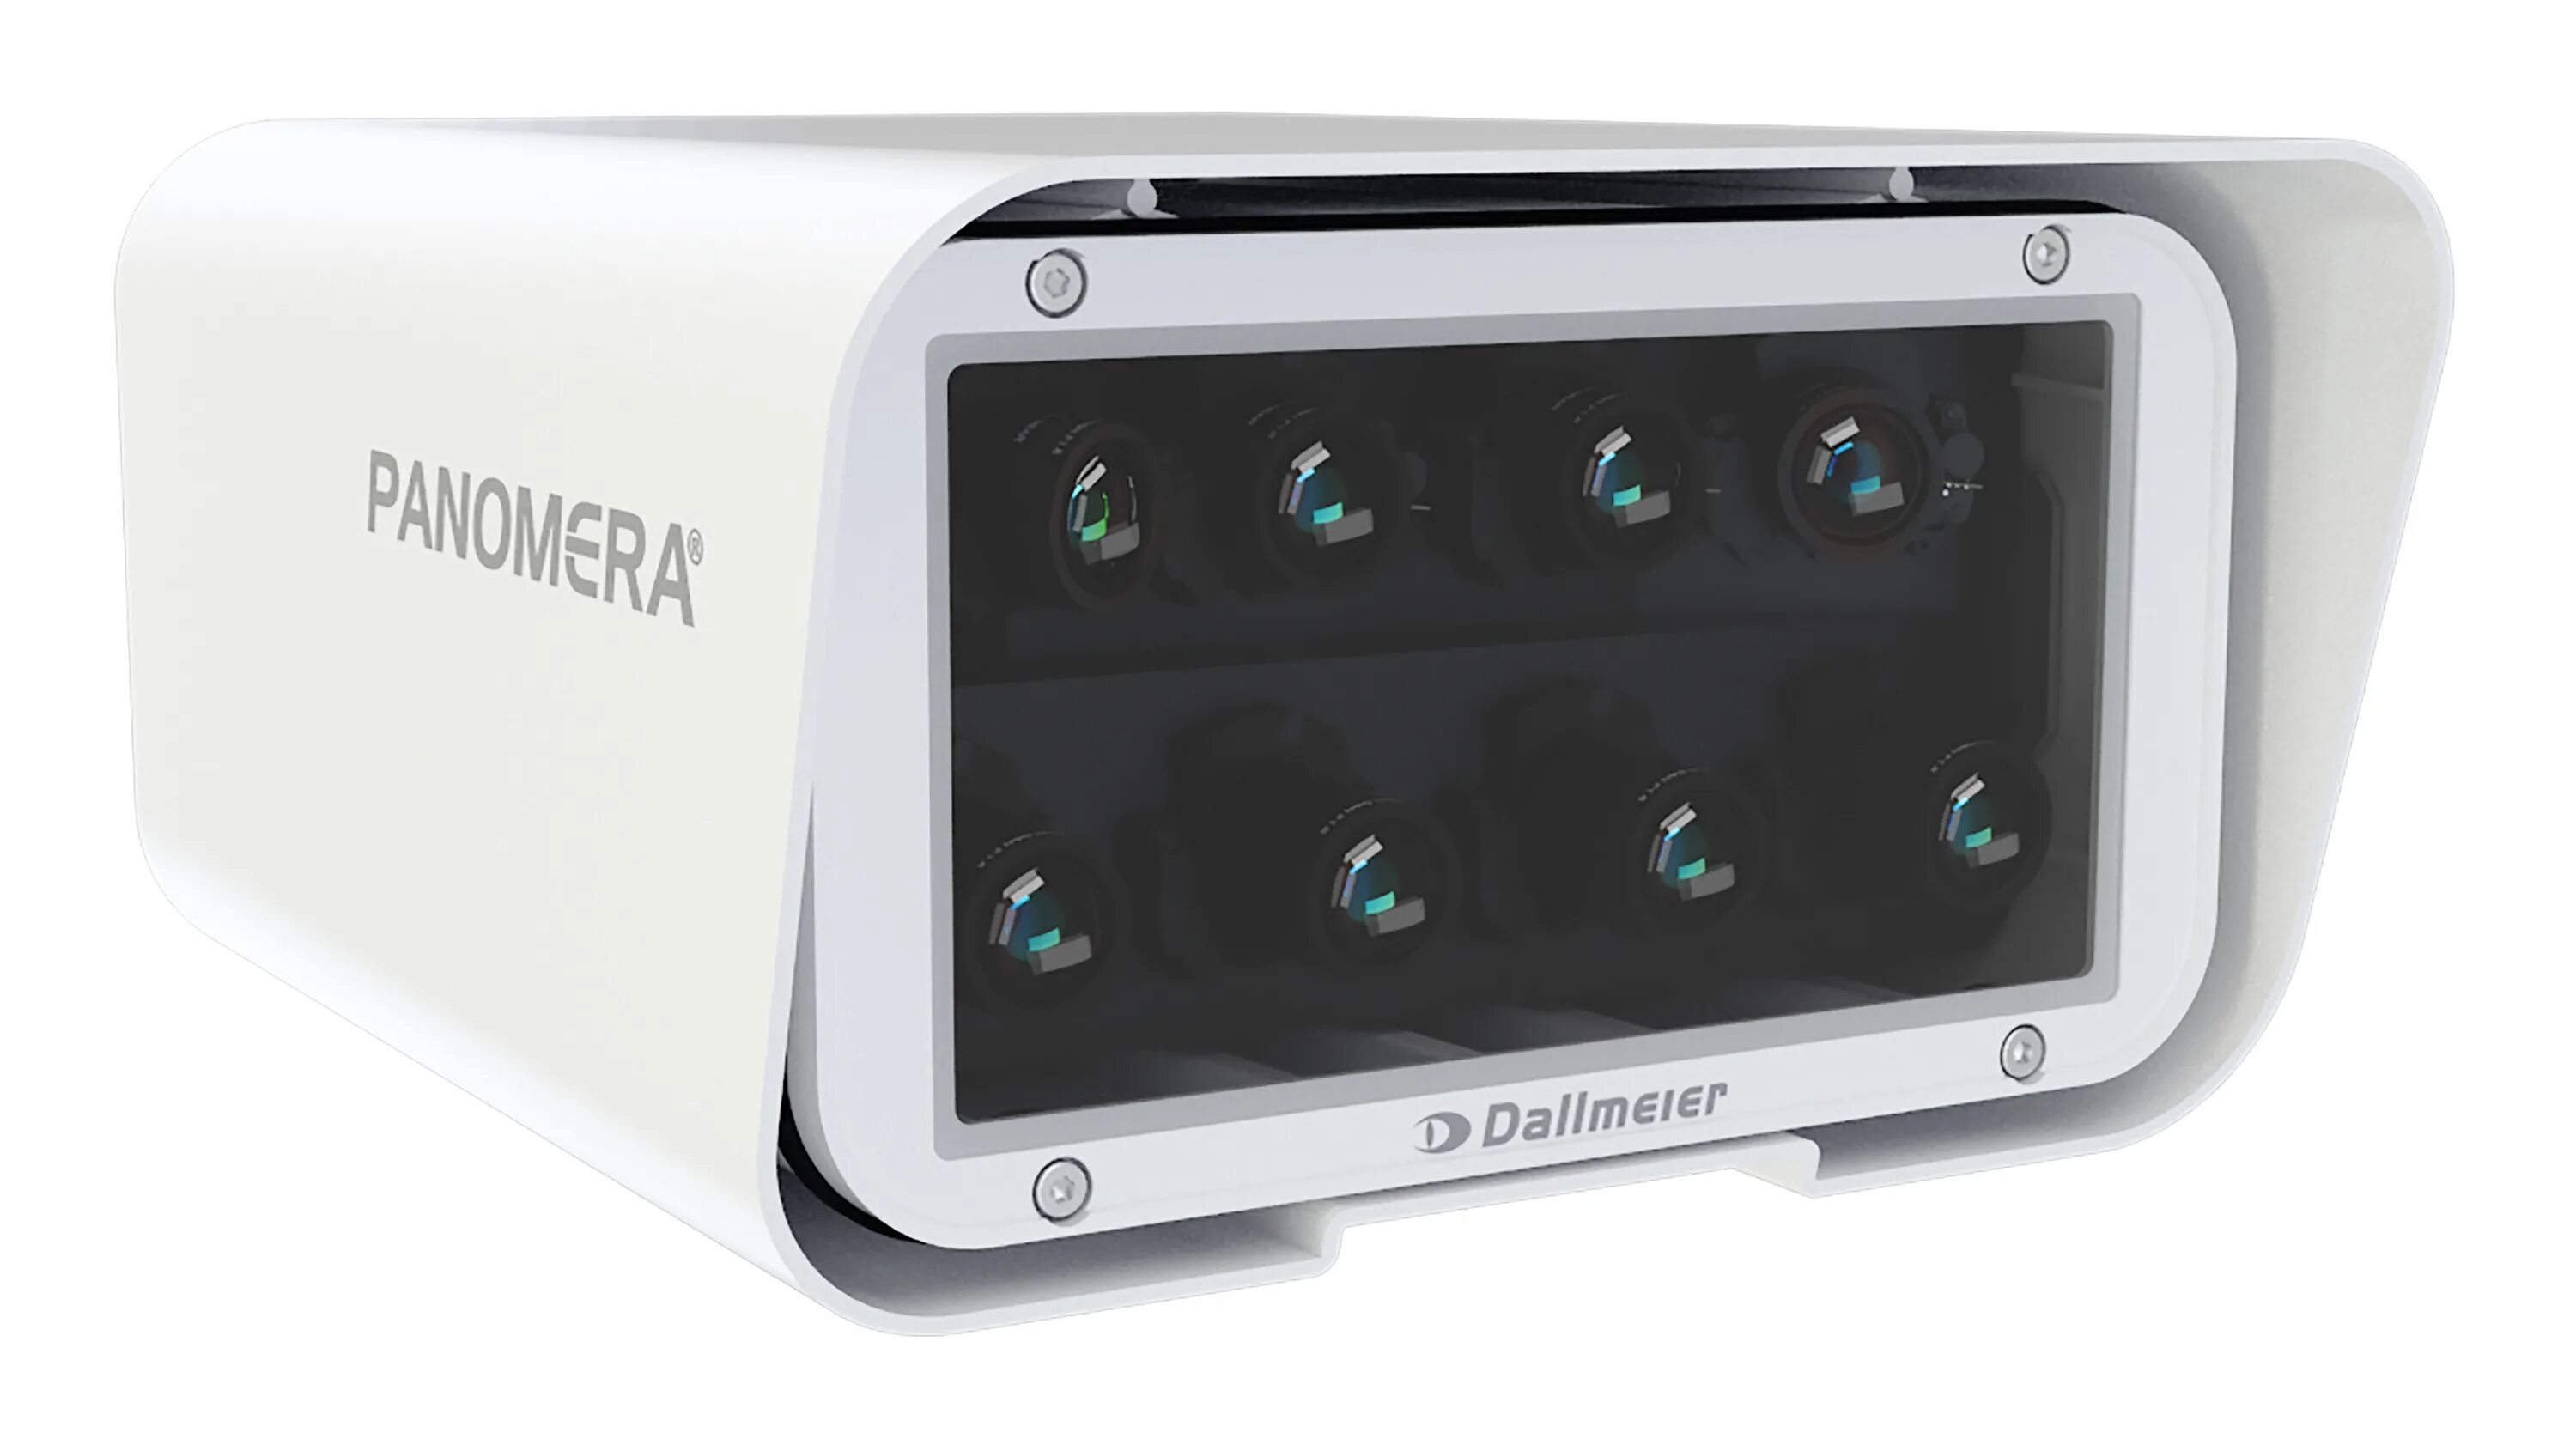 Dallmeier Panamera камера. Dallmeier IP камера. Dallmeier 9 камера. Видеокамера Dallmeier df3000a-DN. Werlerr s 8